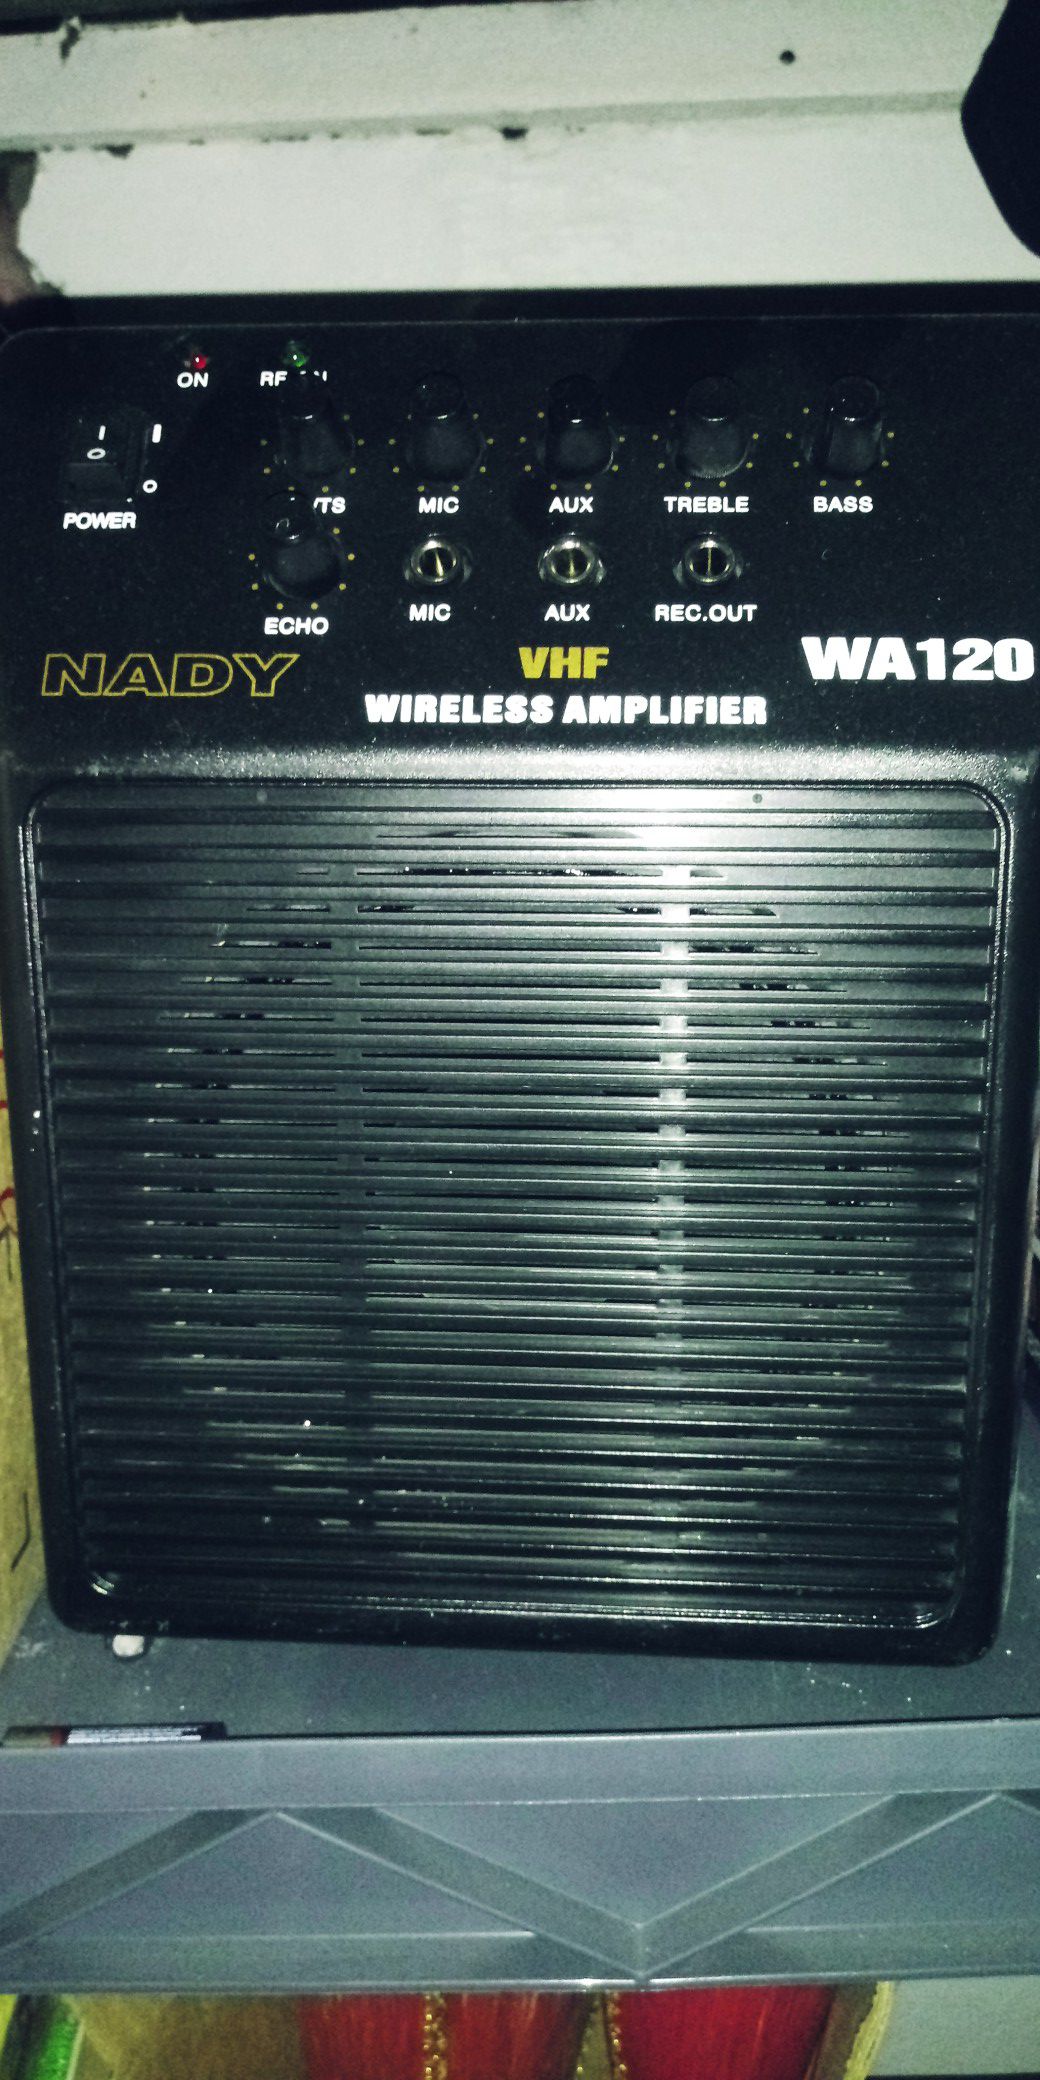 Wireless amplifierb